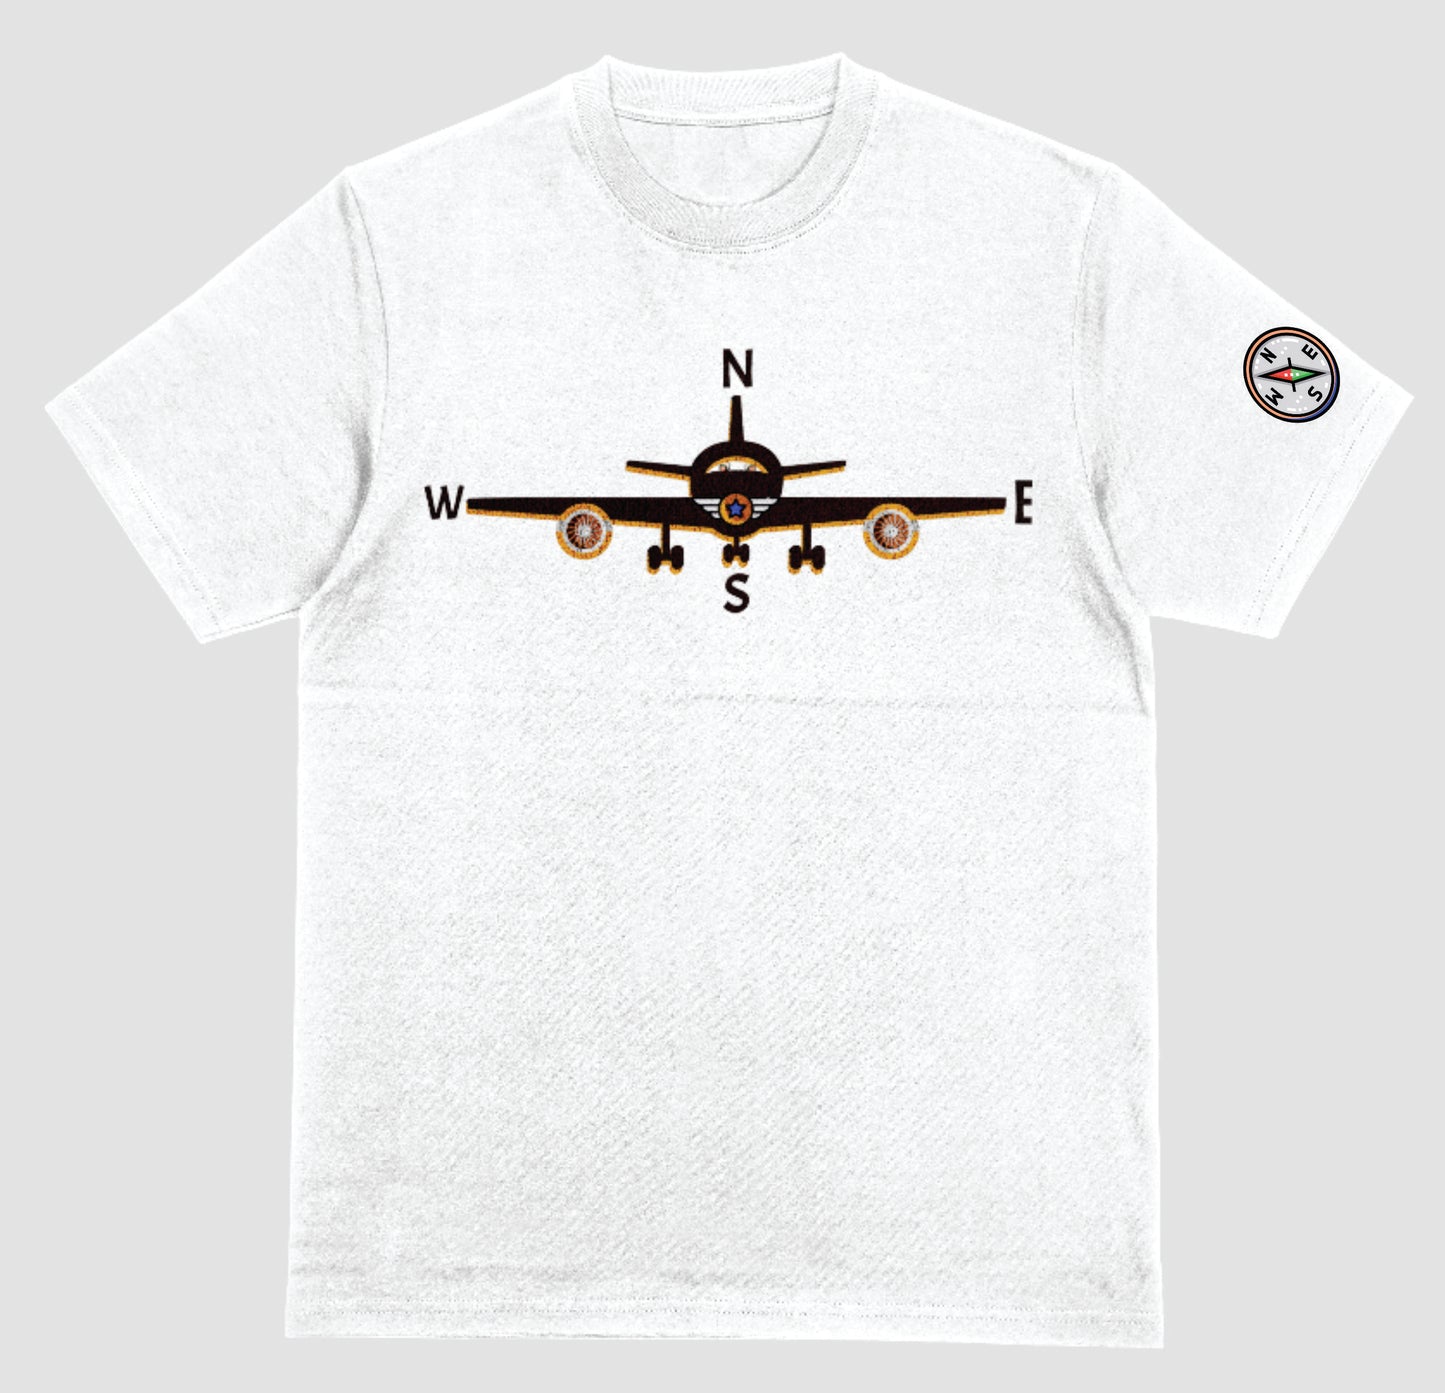 Airplane Shirt, Airplane Shirts, Pilot Shirt, Flying   T Shirt, Airplane T-shirt, Airplane T Shirt Airplane T shirt, Plane Shirt, Pilot T Shirt, Airplane T-shirt.